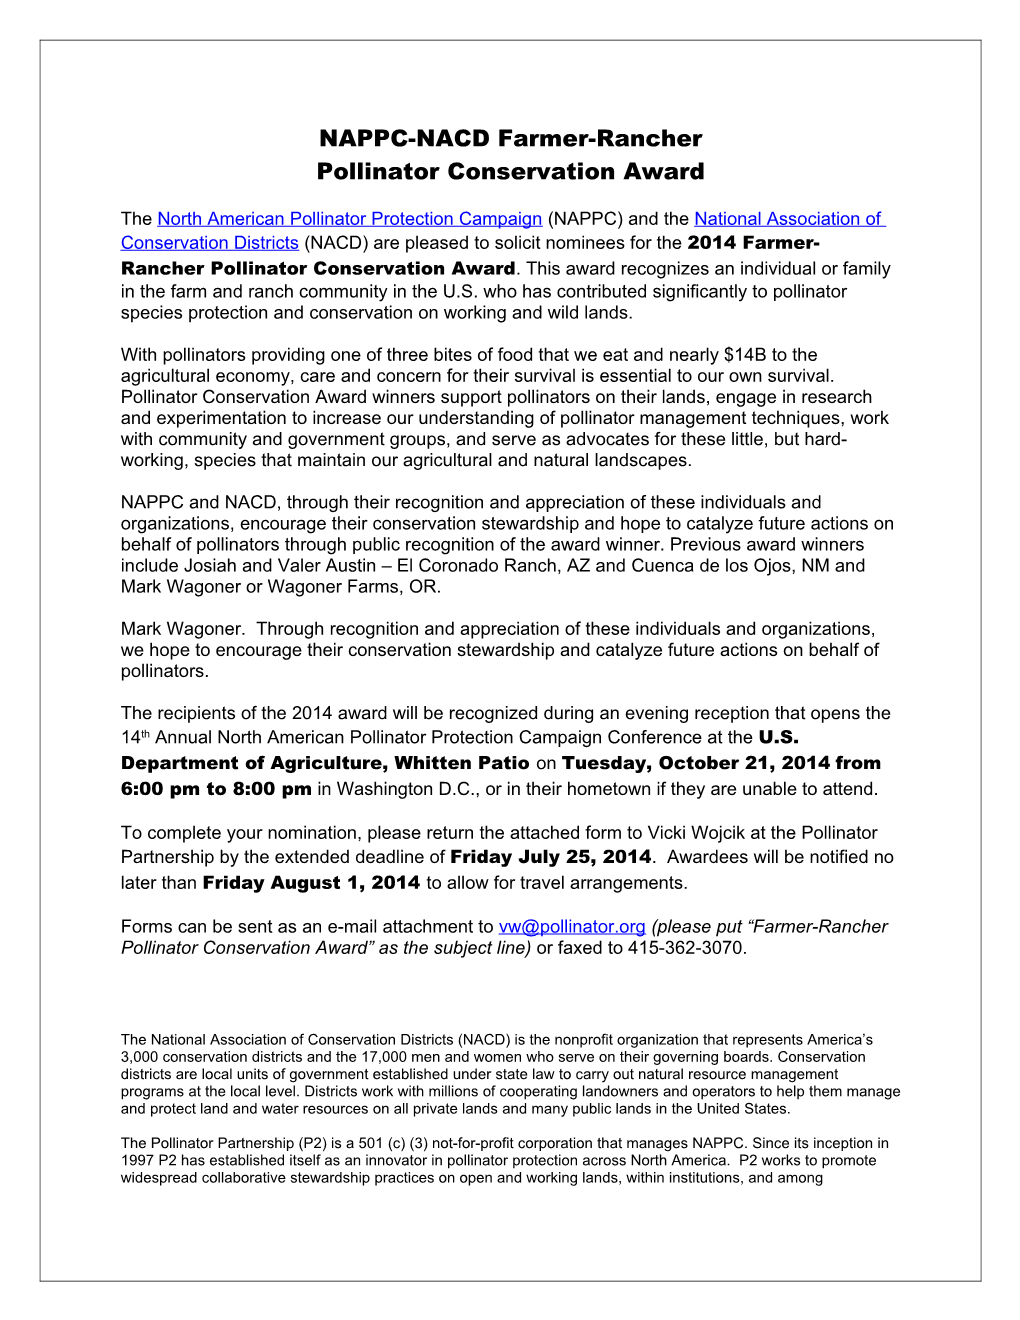 Pollinator Advocate Award